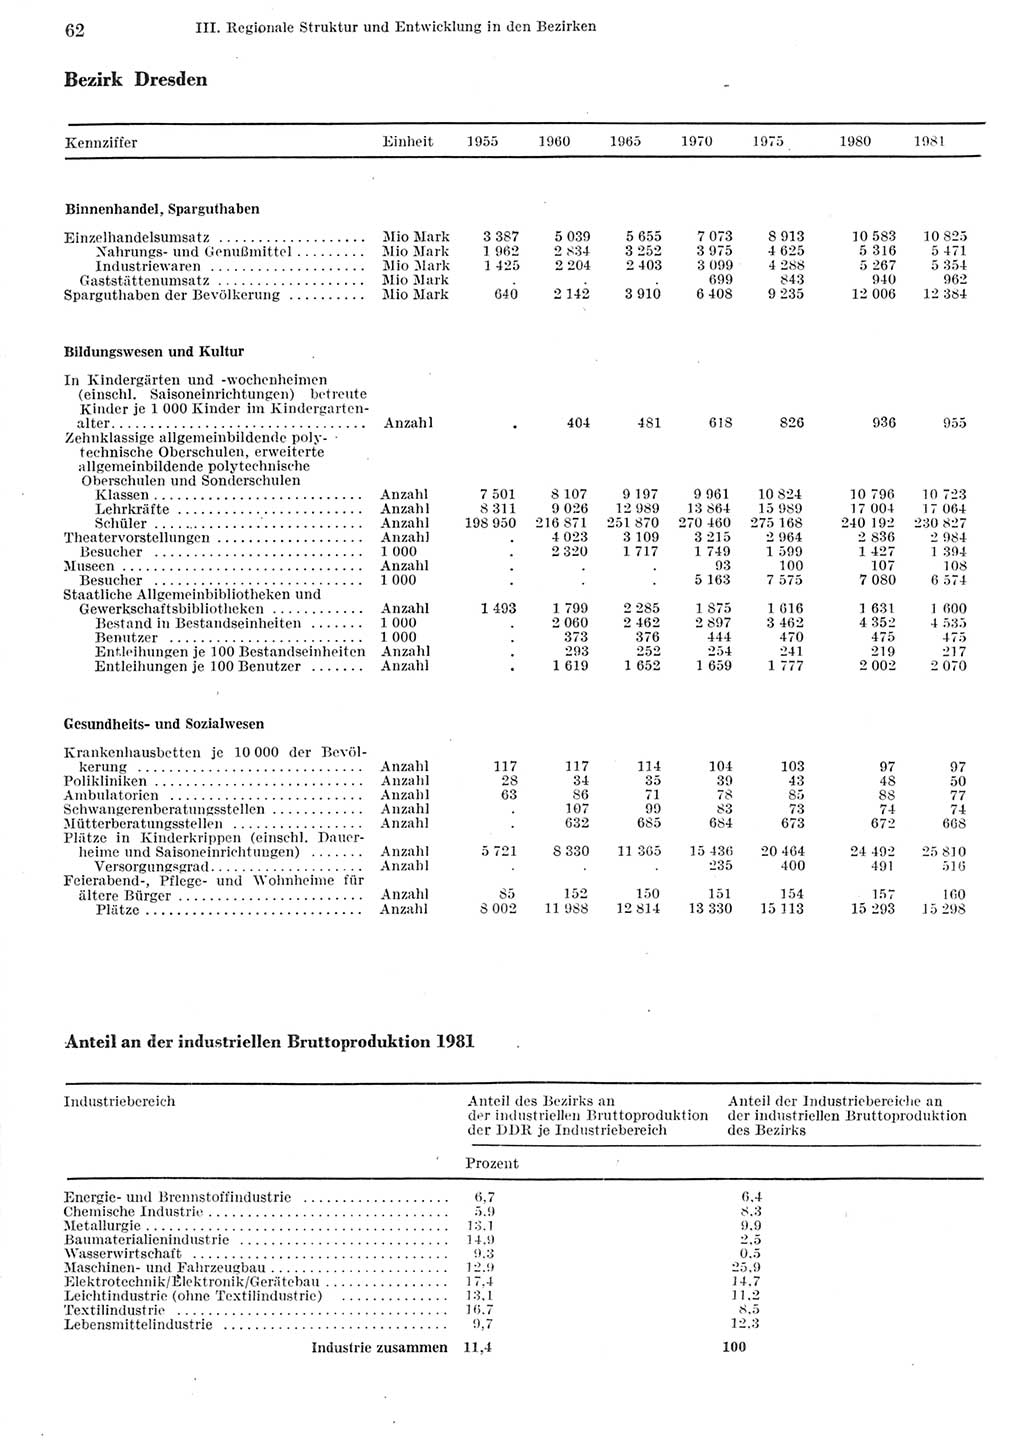 Statistisches Jahrbuch der Deutschen Demokratischen Republik (DDR) 1982, Seite 62 (Stat. Jb. DDR 1982, S. 62)